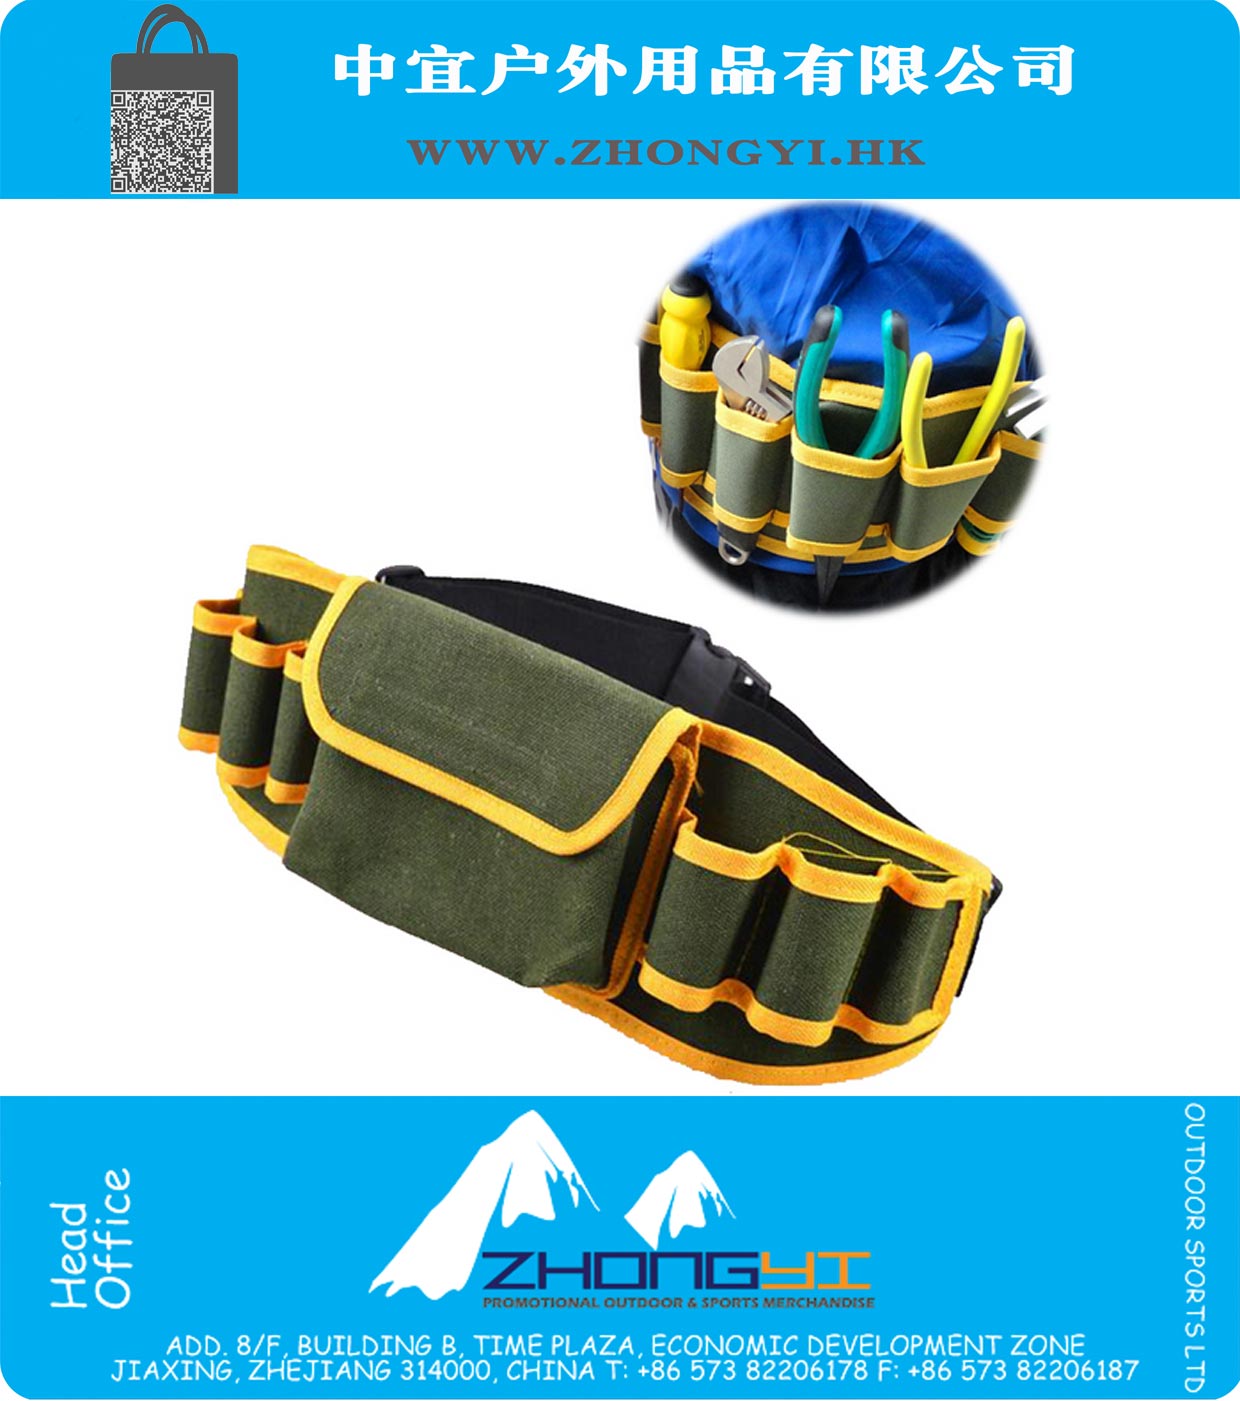 7 Grille multifonctions Mécanique de matériel durable Toile Repair Tool Safe Bag ceinture utilitaire poche Kit Sacs de poche poche Organisateur